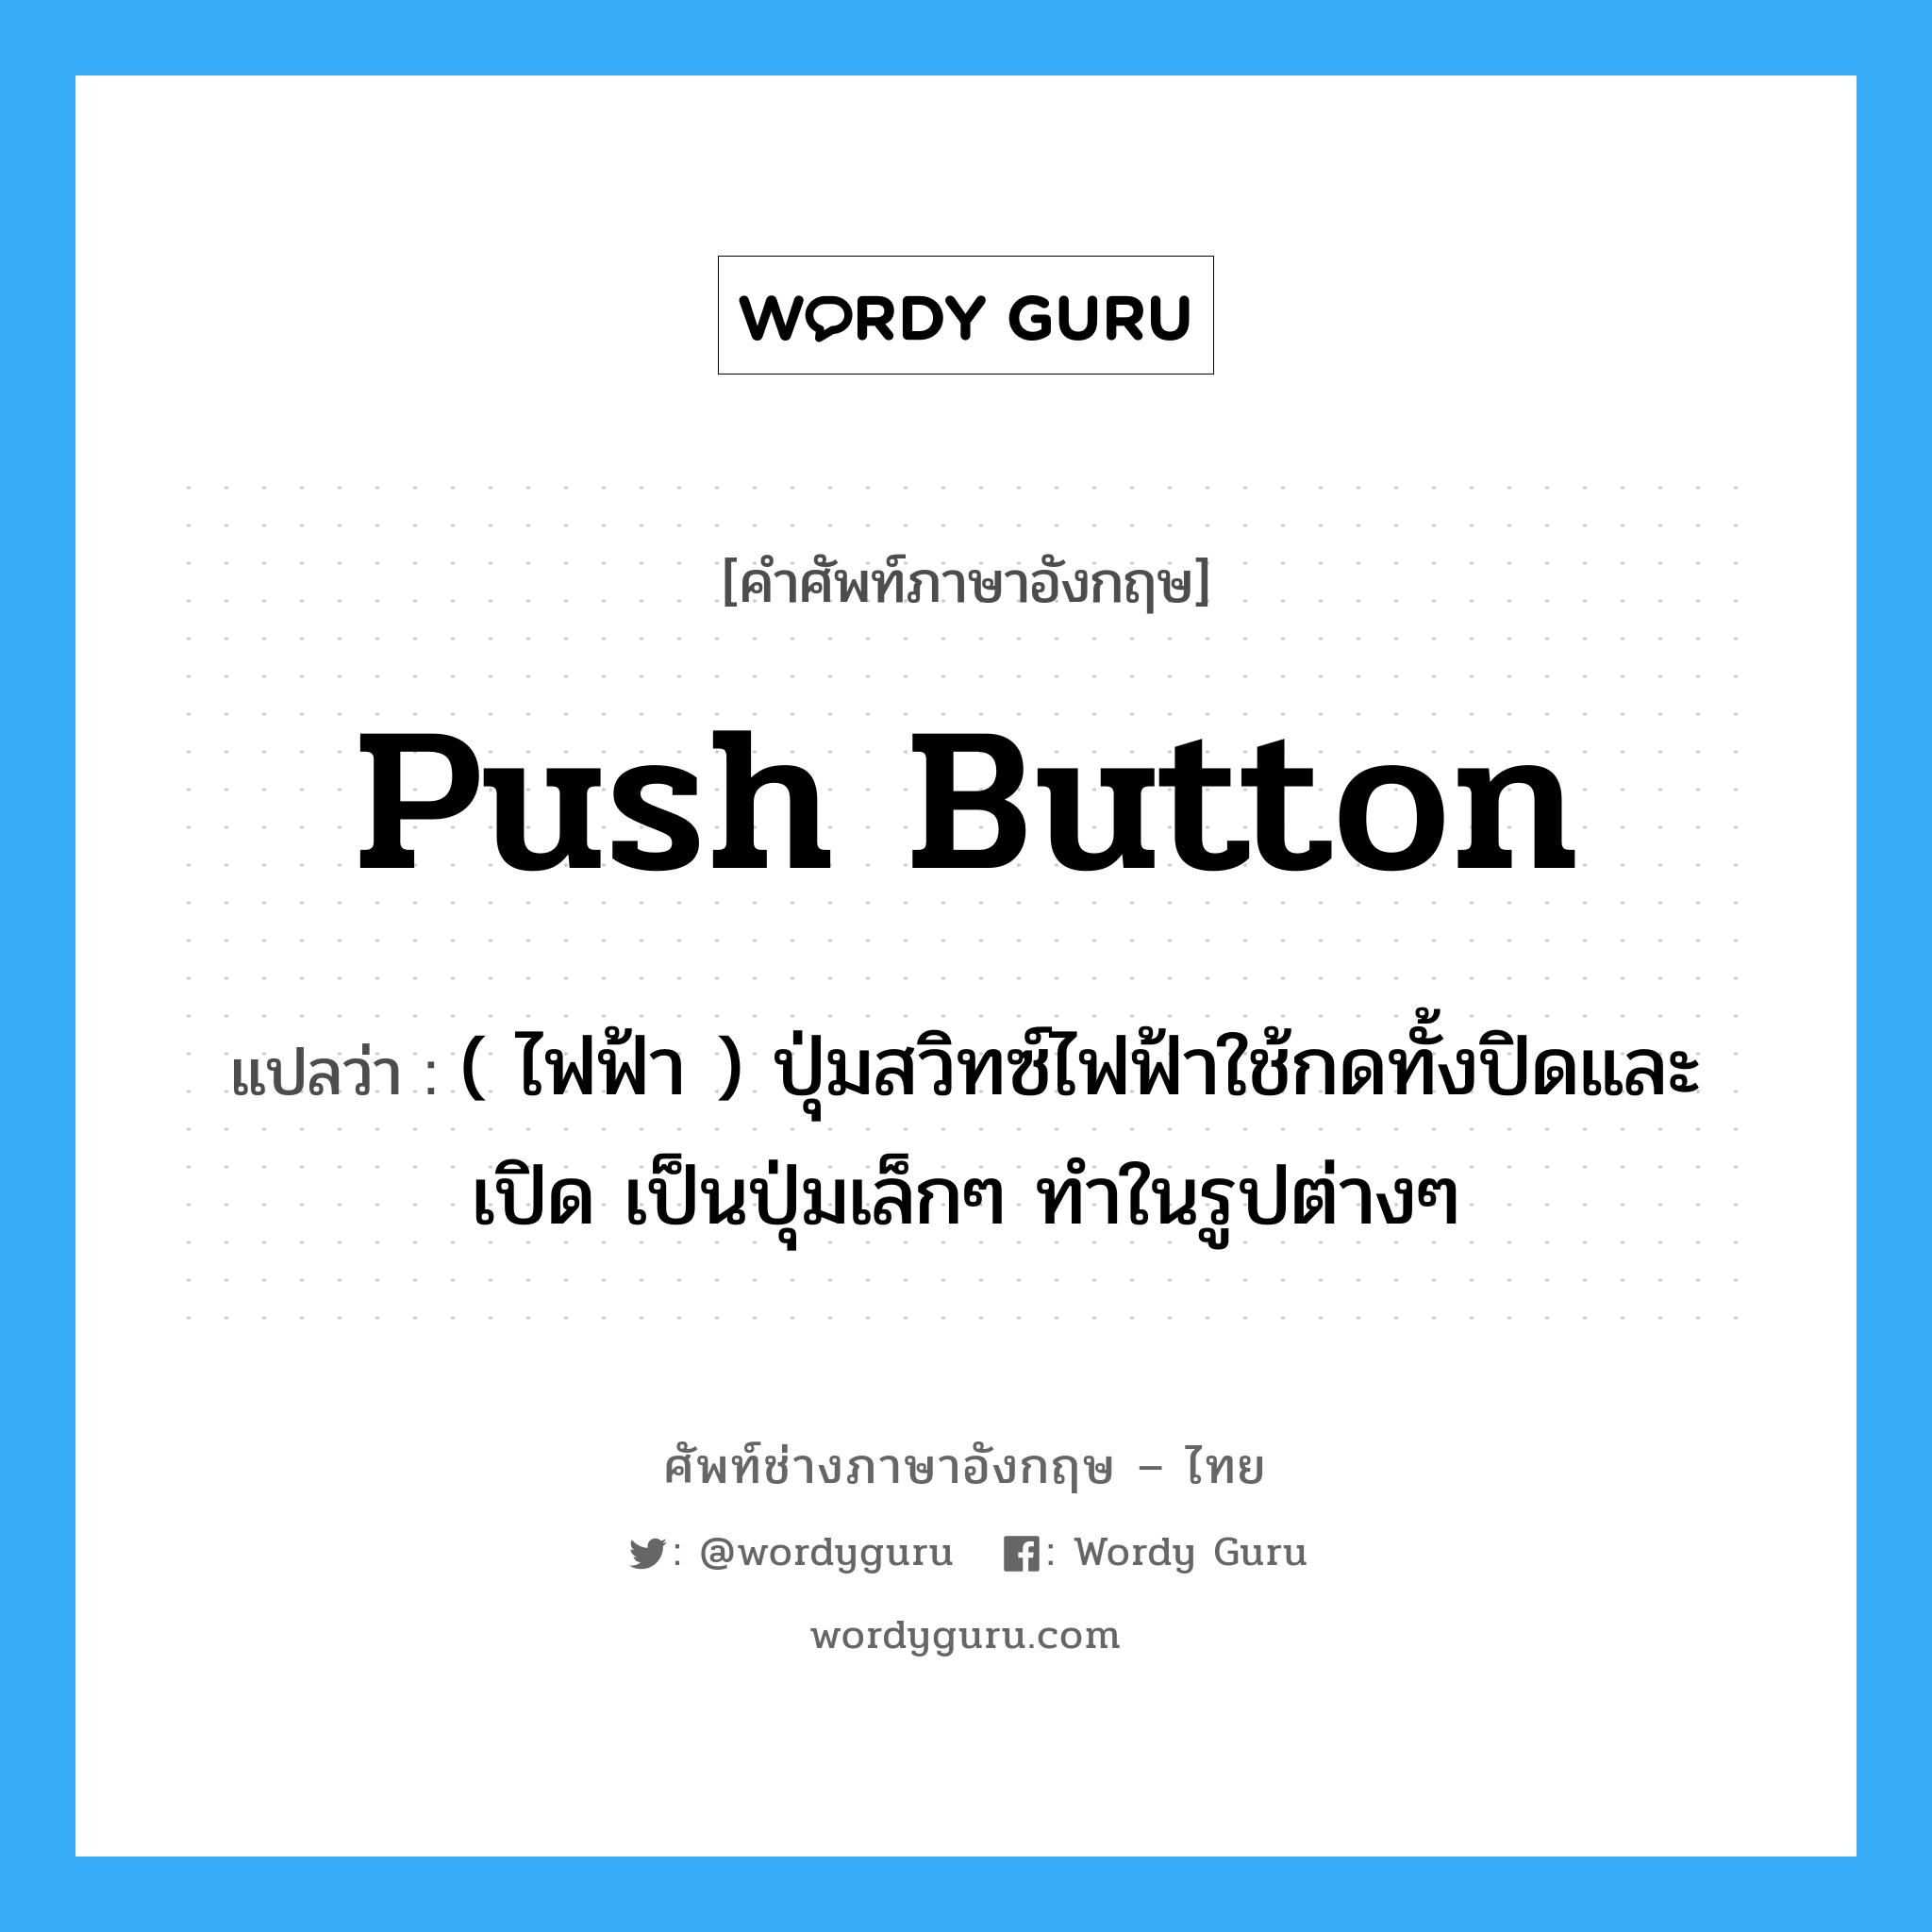 push-button แปลว่า?, คำศัพท์ช่างภาษาอังกฤษ - ไทย push button คำศัพท์ภาษาอังกฤษ push button แปลว่า ( ไฟฟ้า ) ปุ่มสวิทซ์ไฟฟ้าใช้กดทั้งปิดและเปิด เป็นปุ่มเล็กๆ ทำในรูปต่างๆ